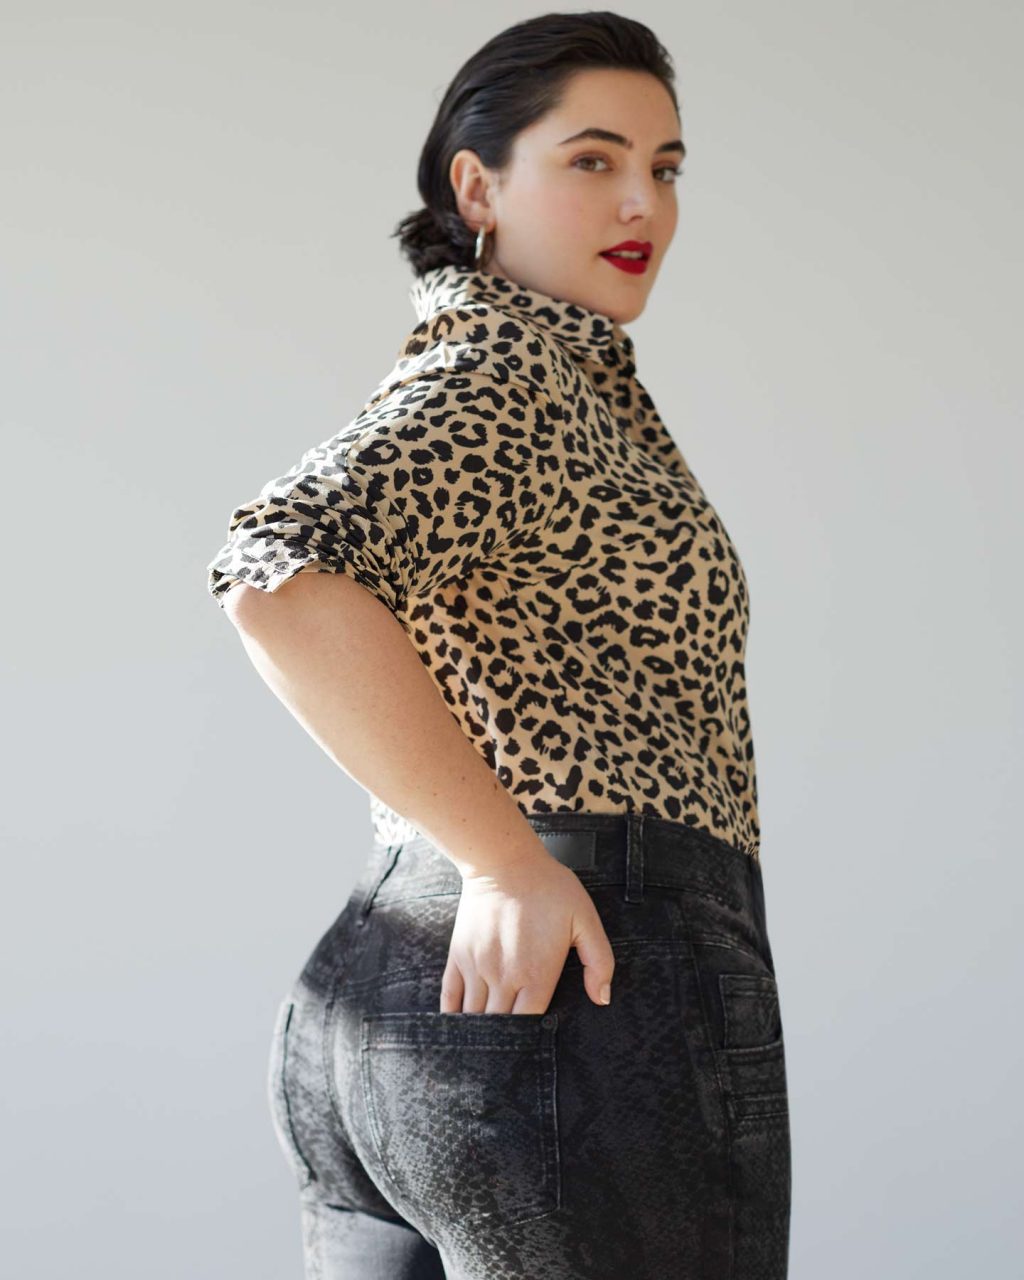 Los mejores pantalones para mujeres Lookiero Blog